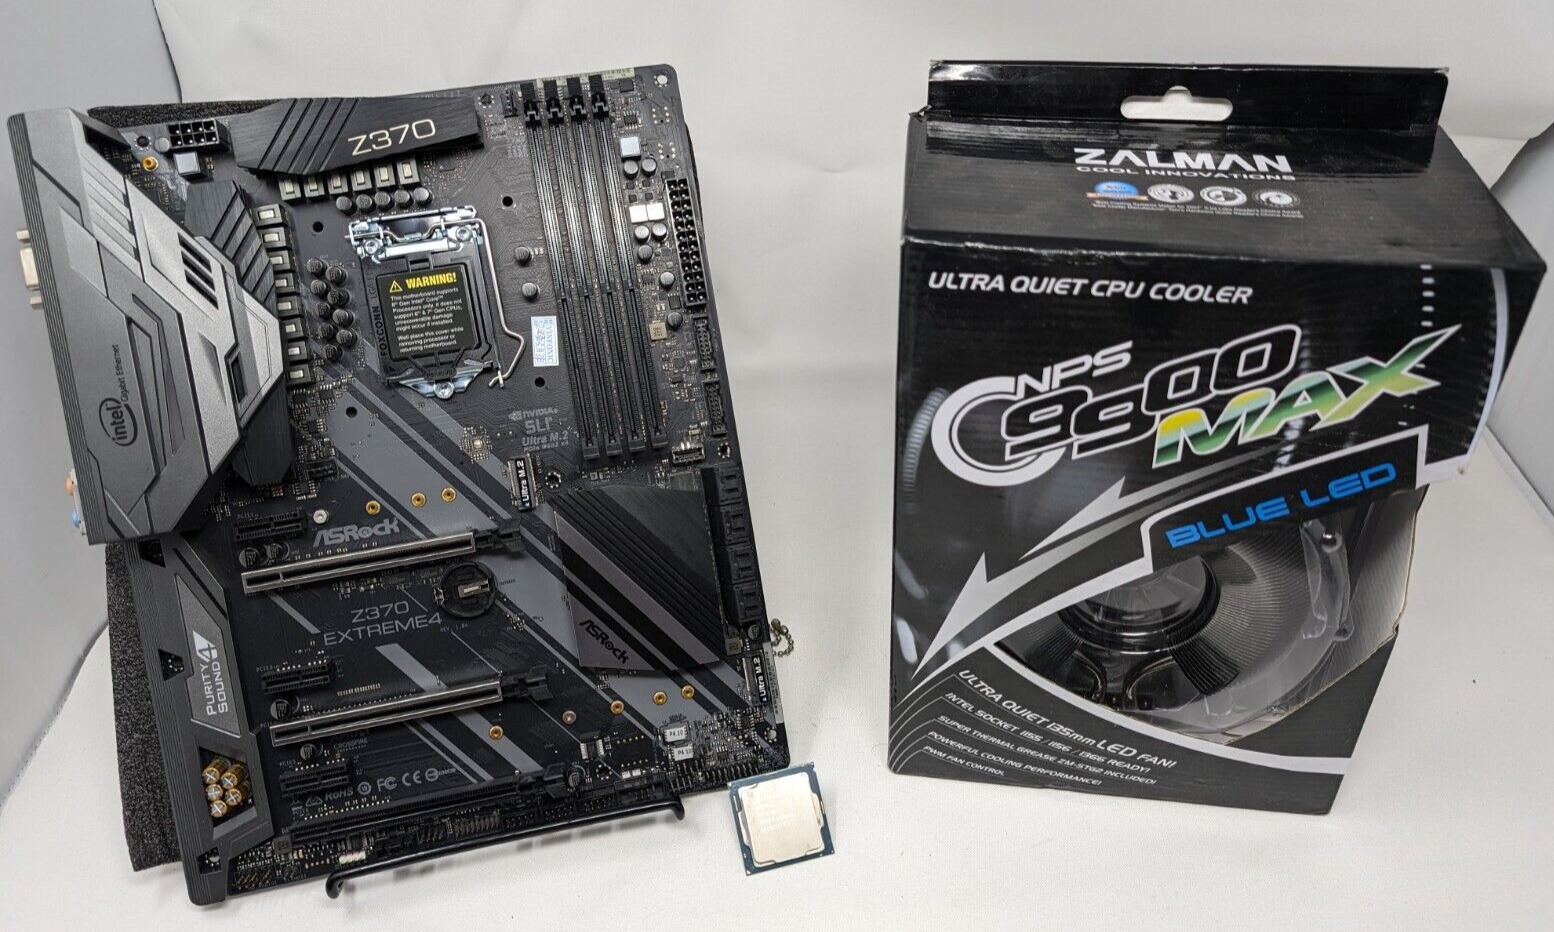 ASRock Z370 Extreme4 LGA 1151 ATX Gaming Motherboard + Cooler and INTEL I7-8700